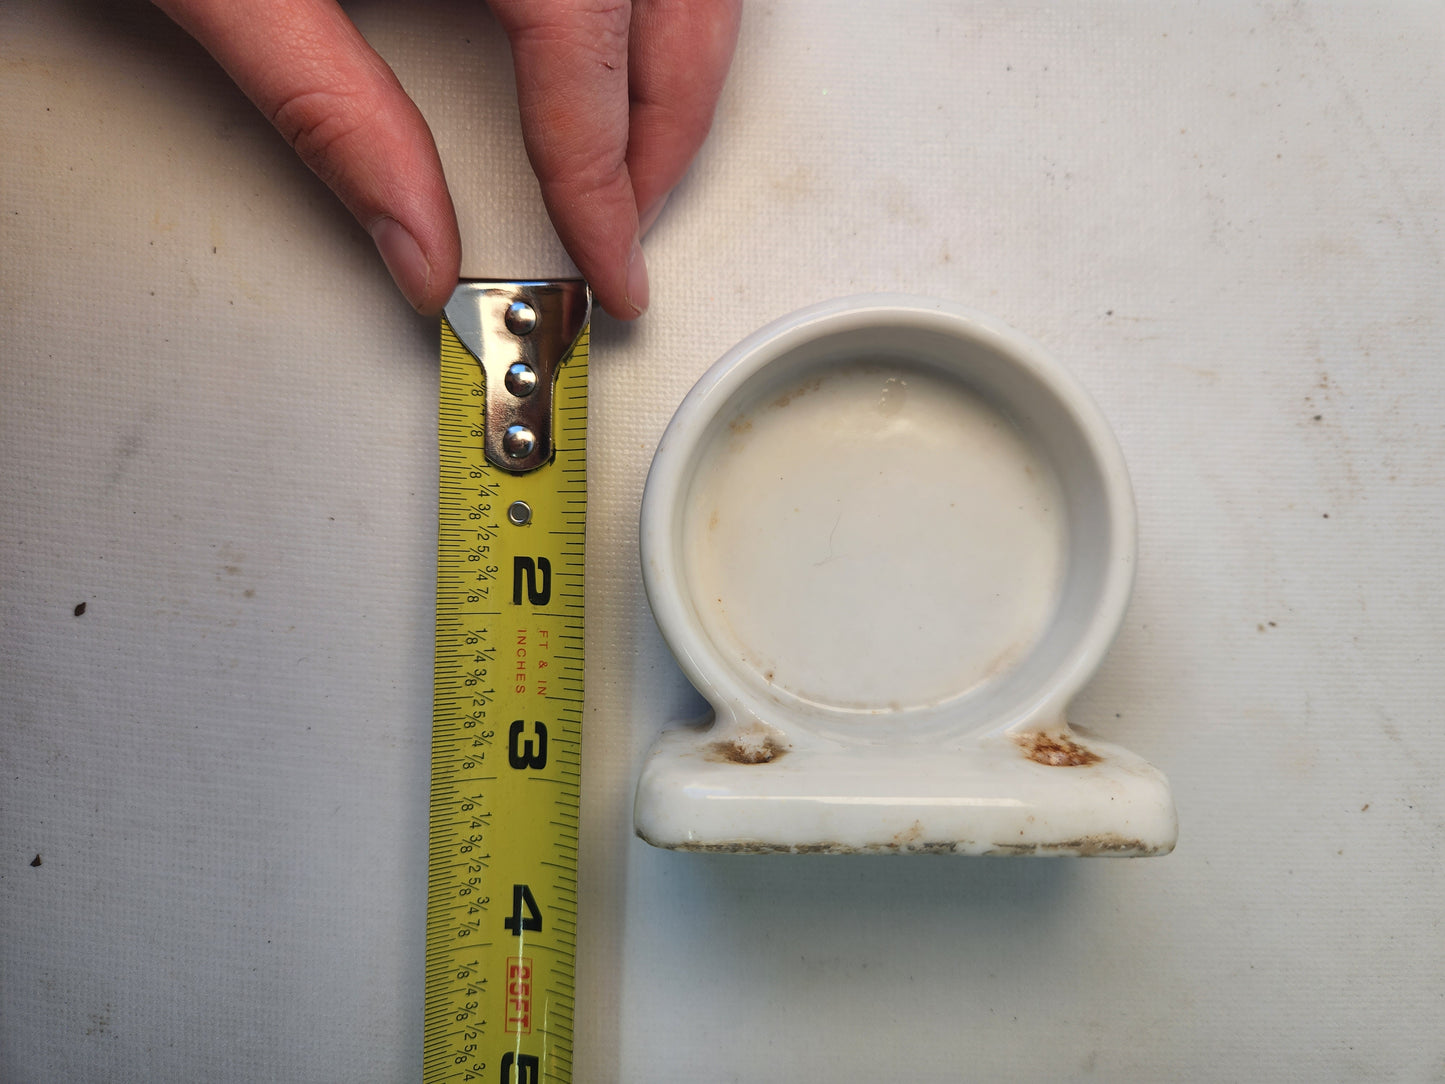 Vintage Ceramic Cup or Soap Dish, Vintage Bathroom Cup Holder or Soap Bar Holder 113007